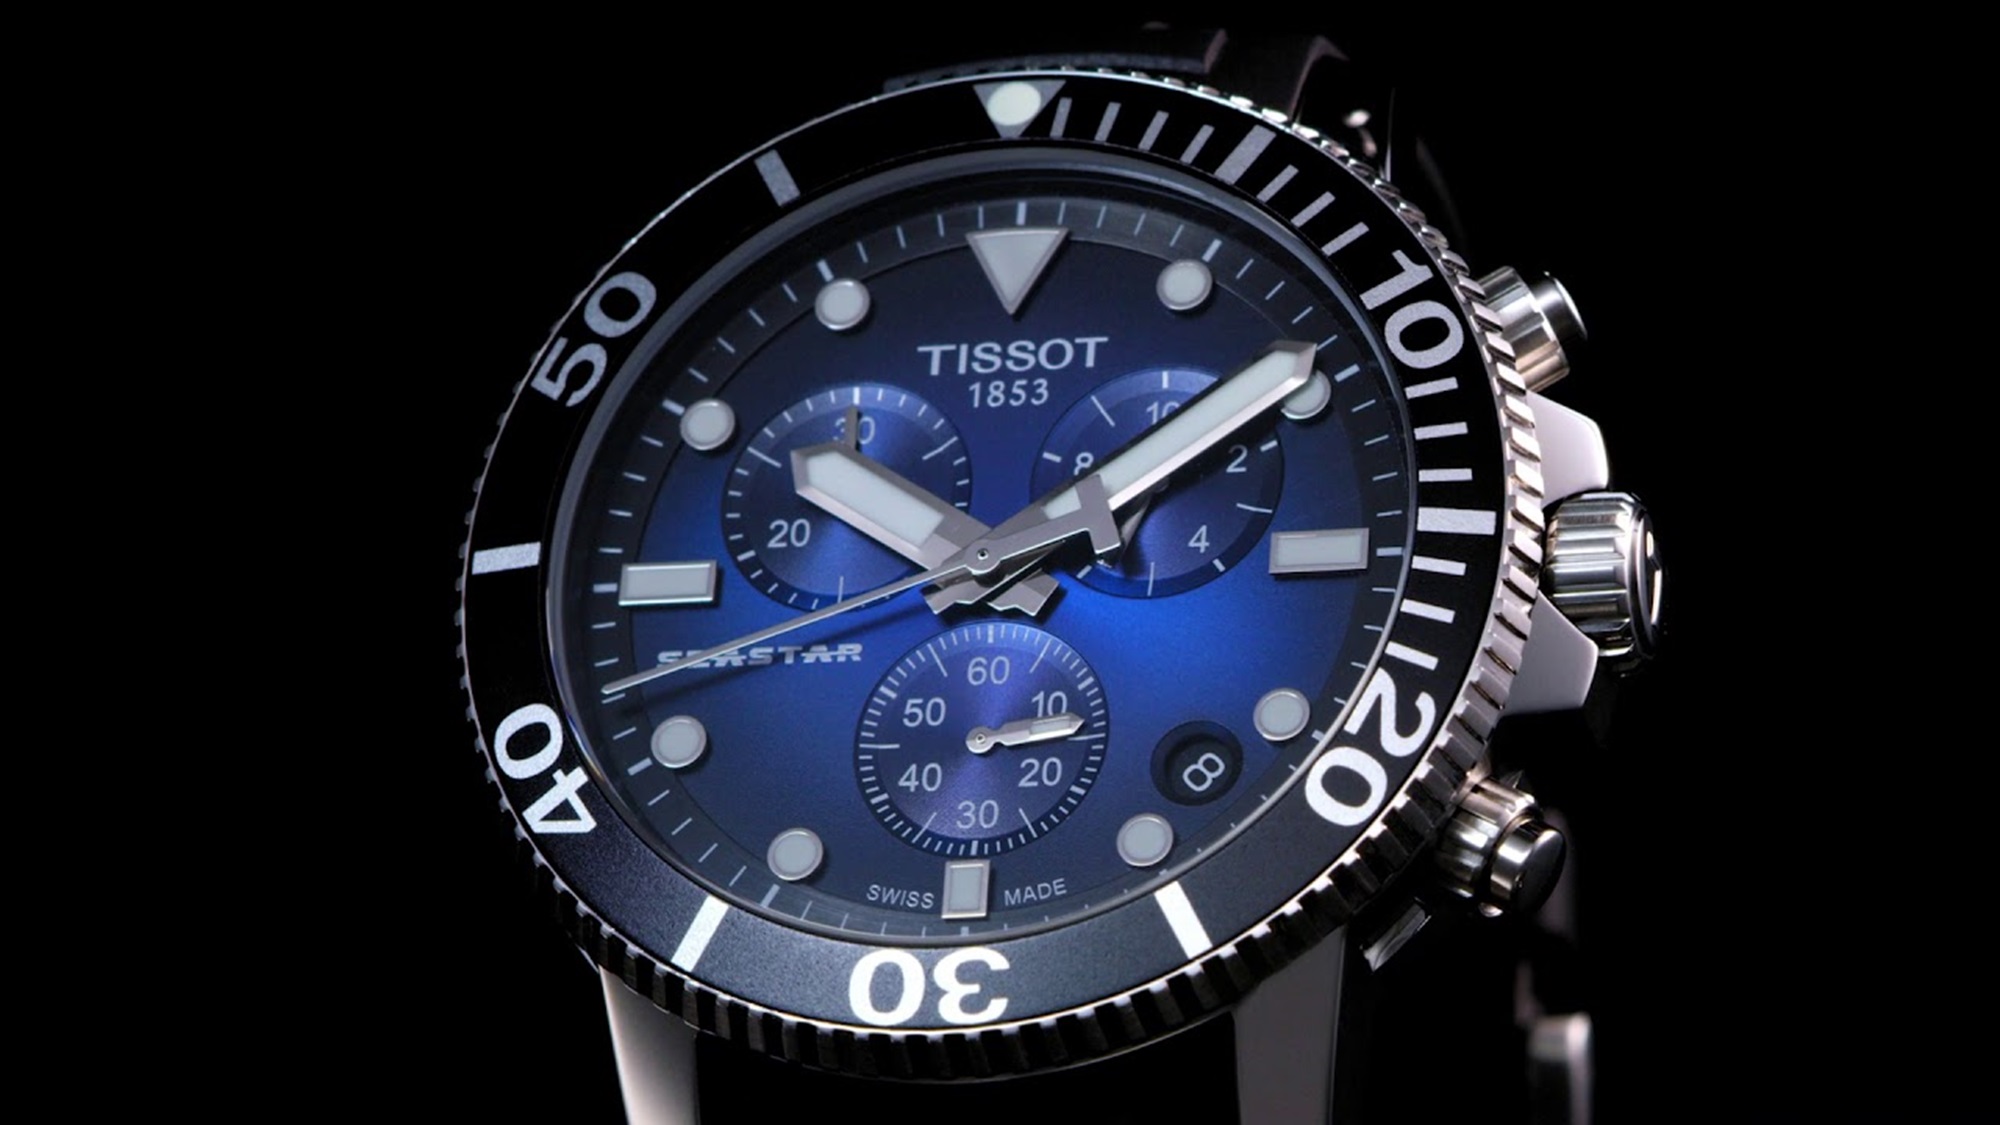 Tissot watch in dark